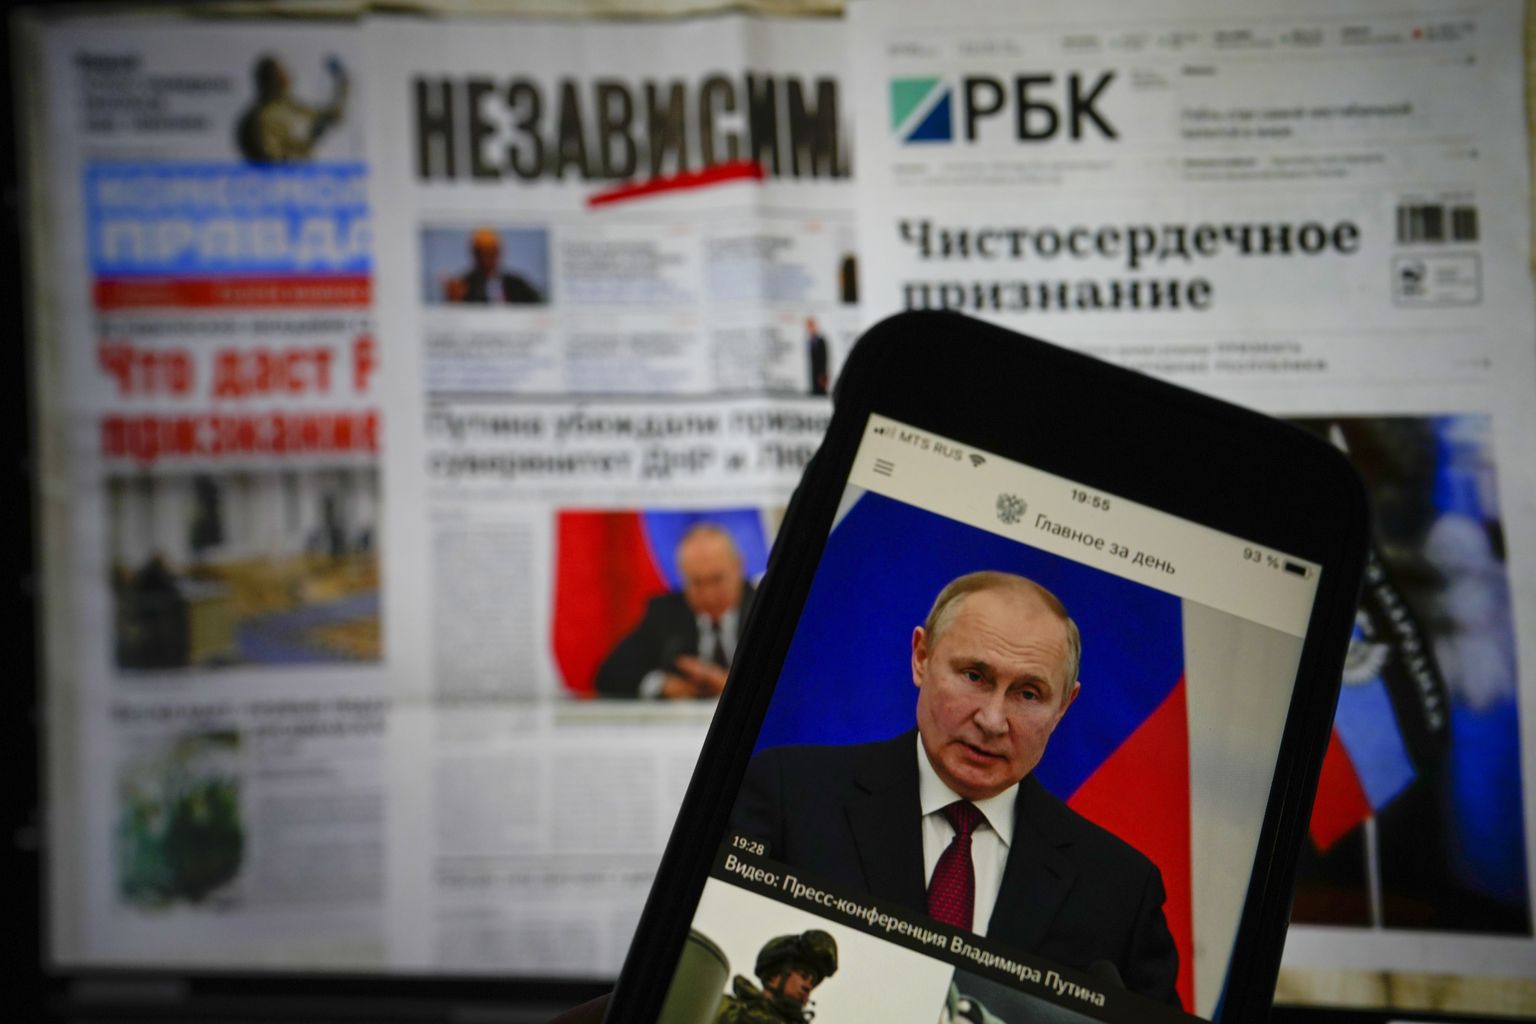 Vene väljaanded ja venelane iPhone'ist uudiseid lugemas. Foto on tehtud 22. veebruaril 2022. Kaks päeva hiljem, 24. veebruaril 2022 tungisid Vene väed Ukrainasse